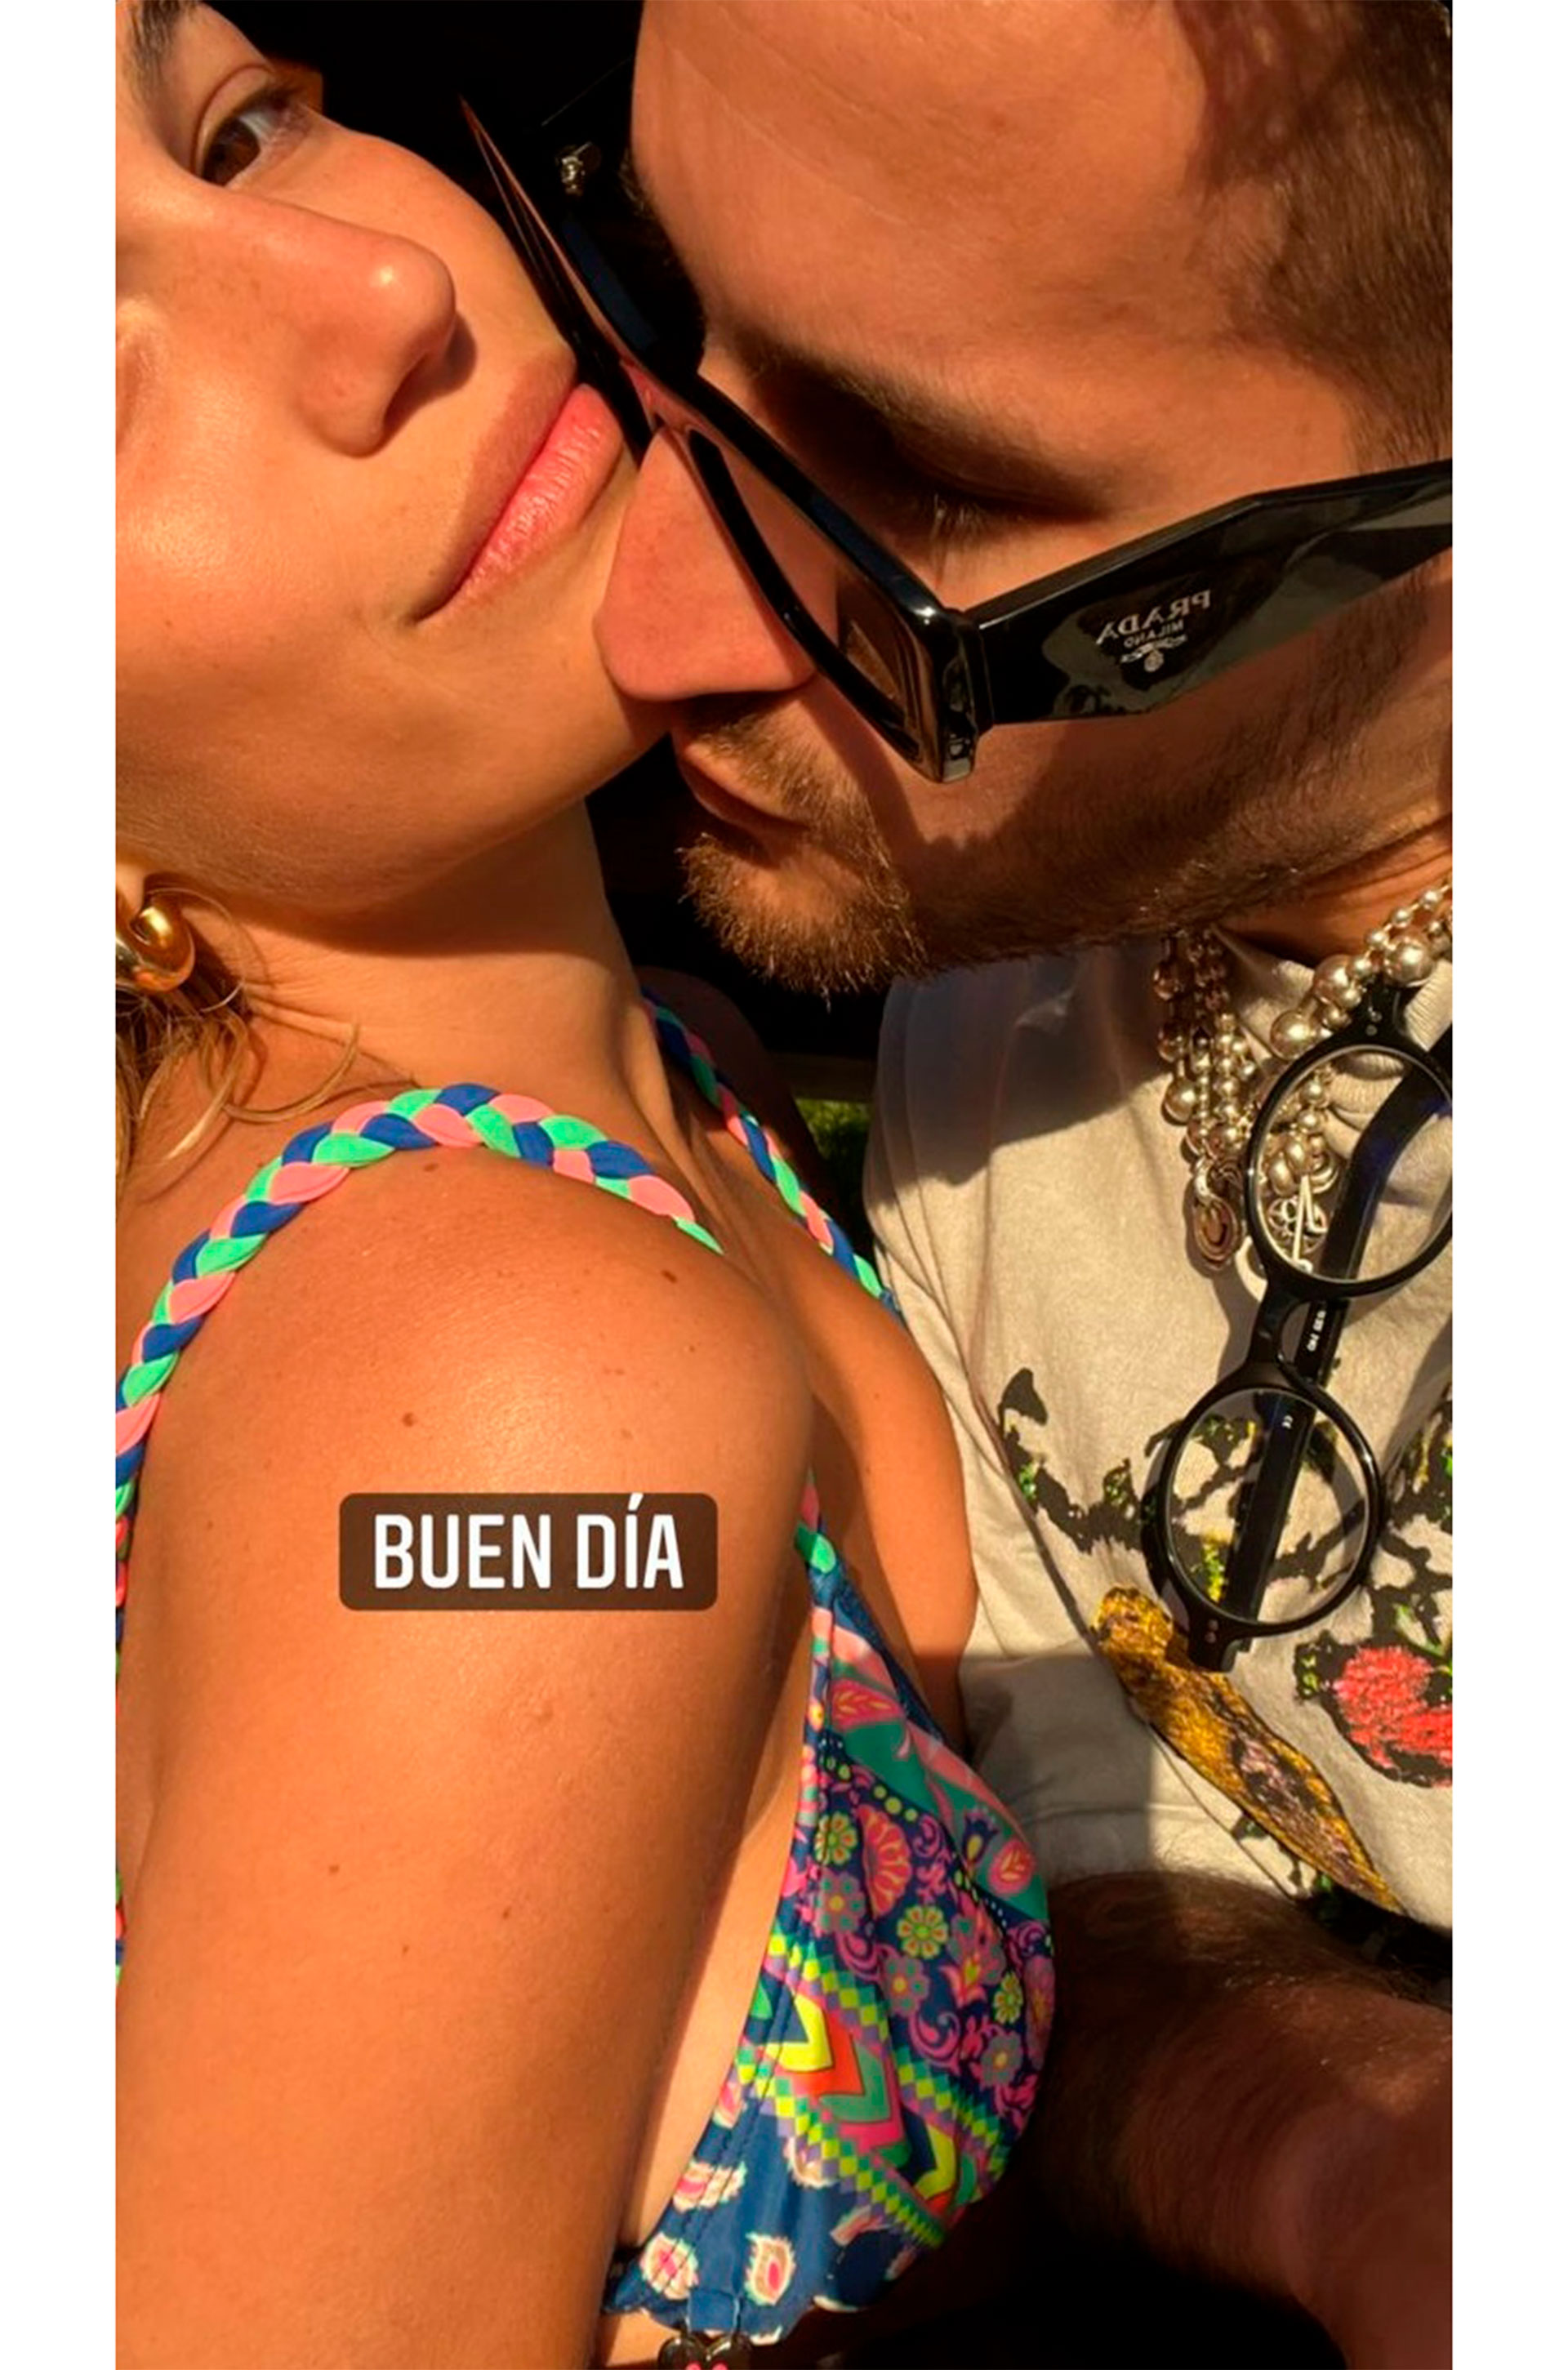 La romántica selfie de Stefi Roitman y Ricky Montaner durante su Luna de miel